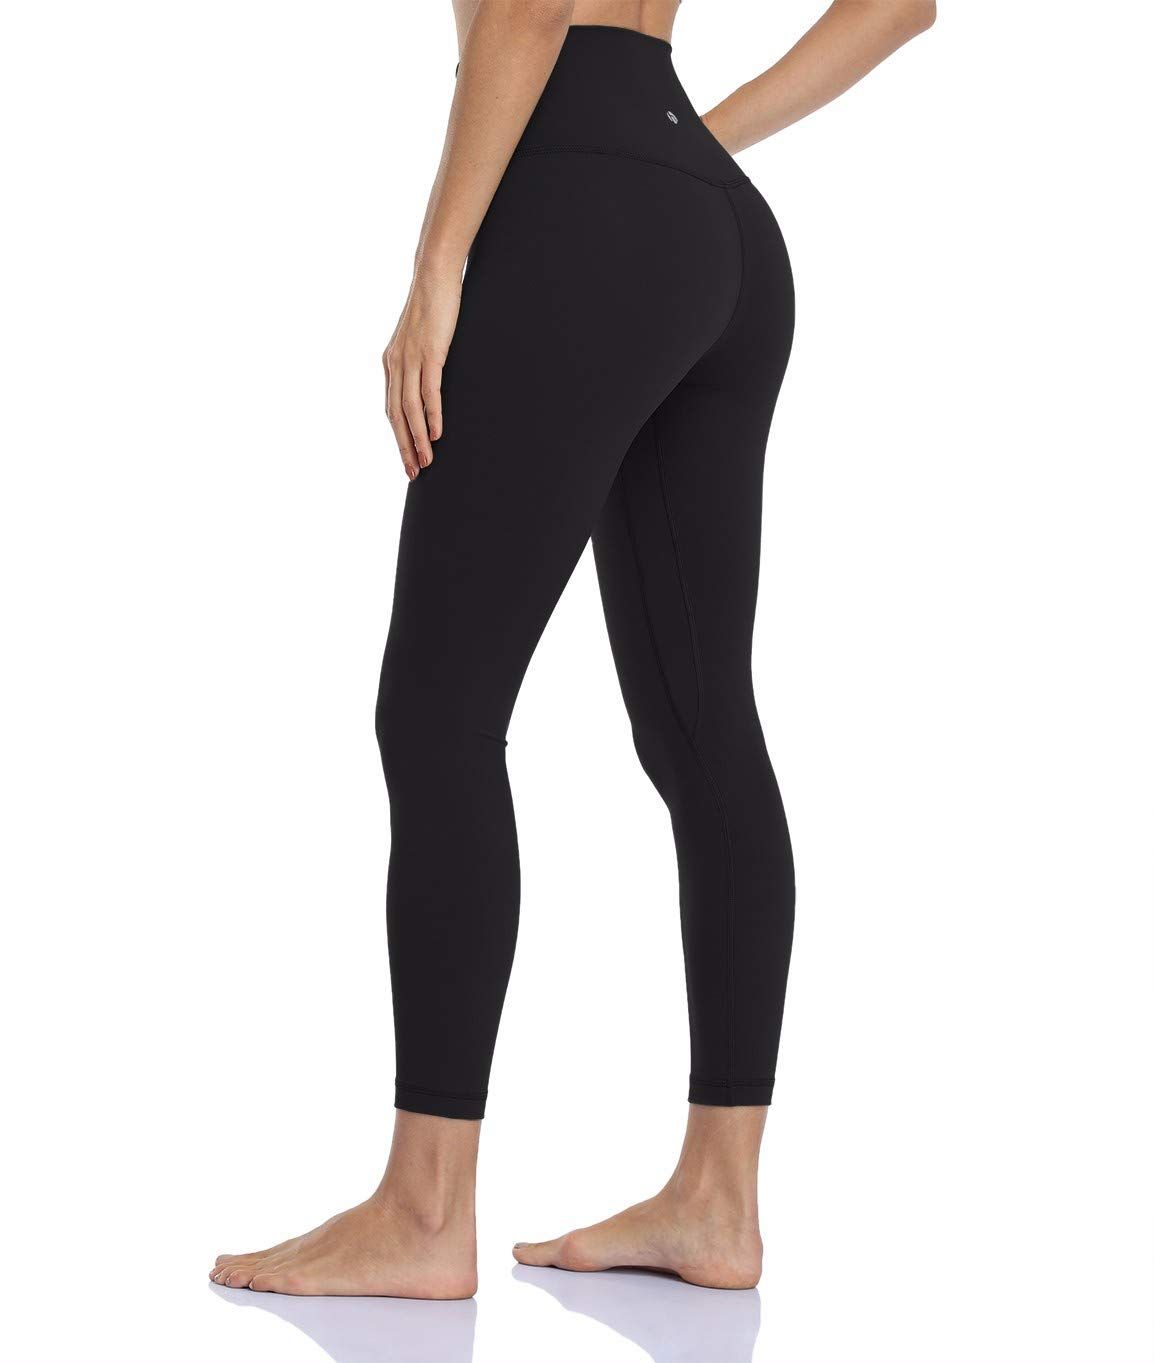 Nike Zenvy Women's Gentle-Support High-Waisted Full-Length Leggings.  Nike.com